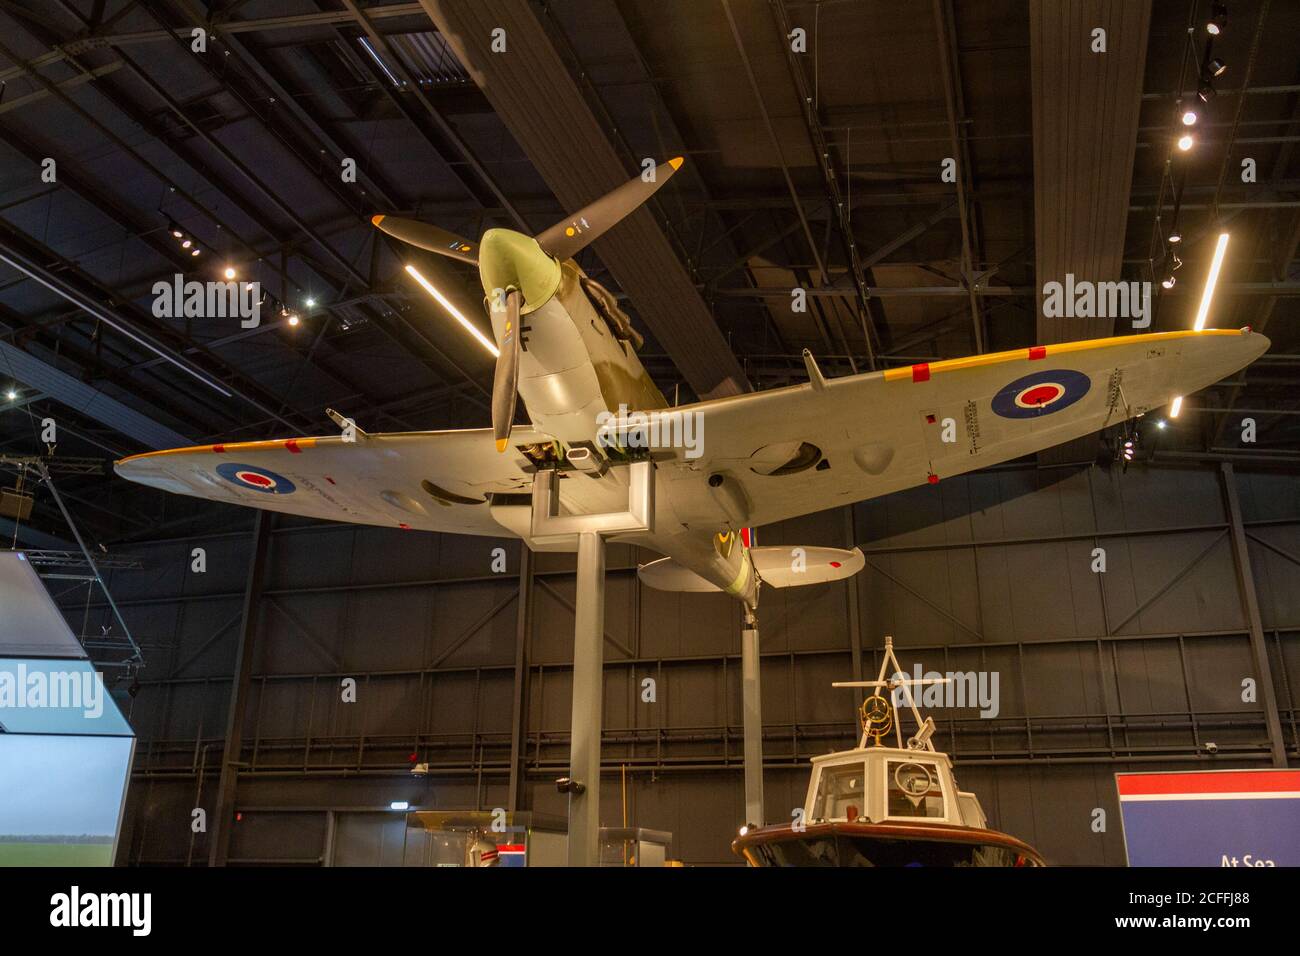 A Supermarine Spitfire Mk Vb, exposé au RAF Museum, Londres, Royaume-Uni. Banque D'Images